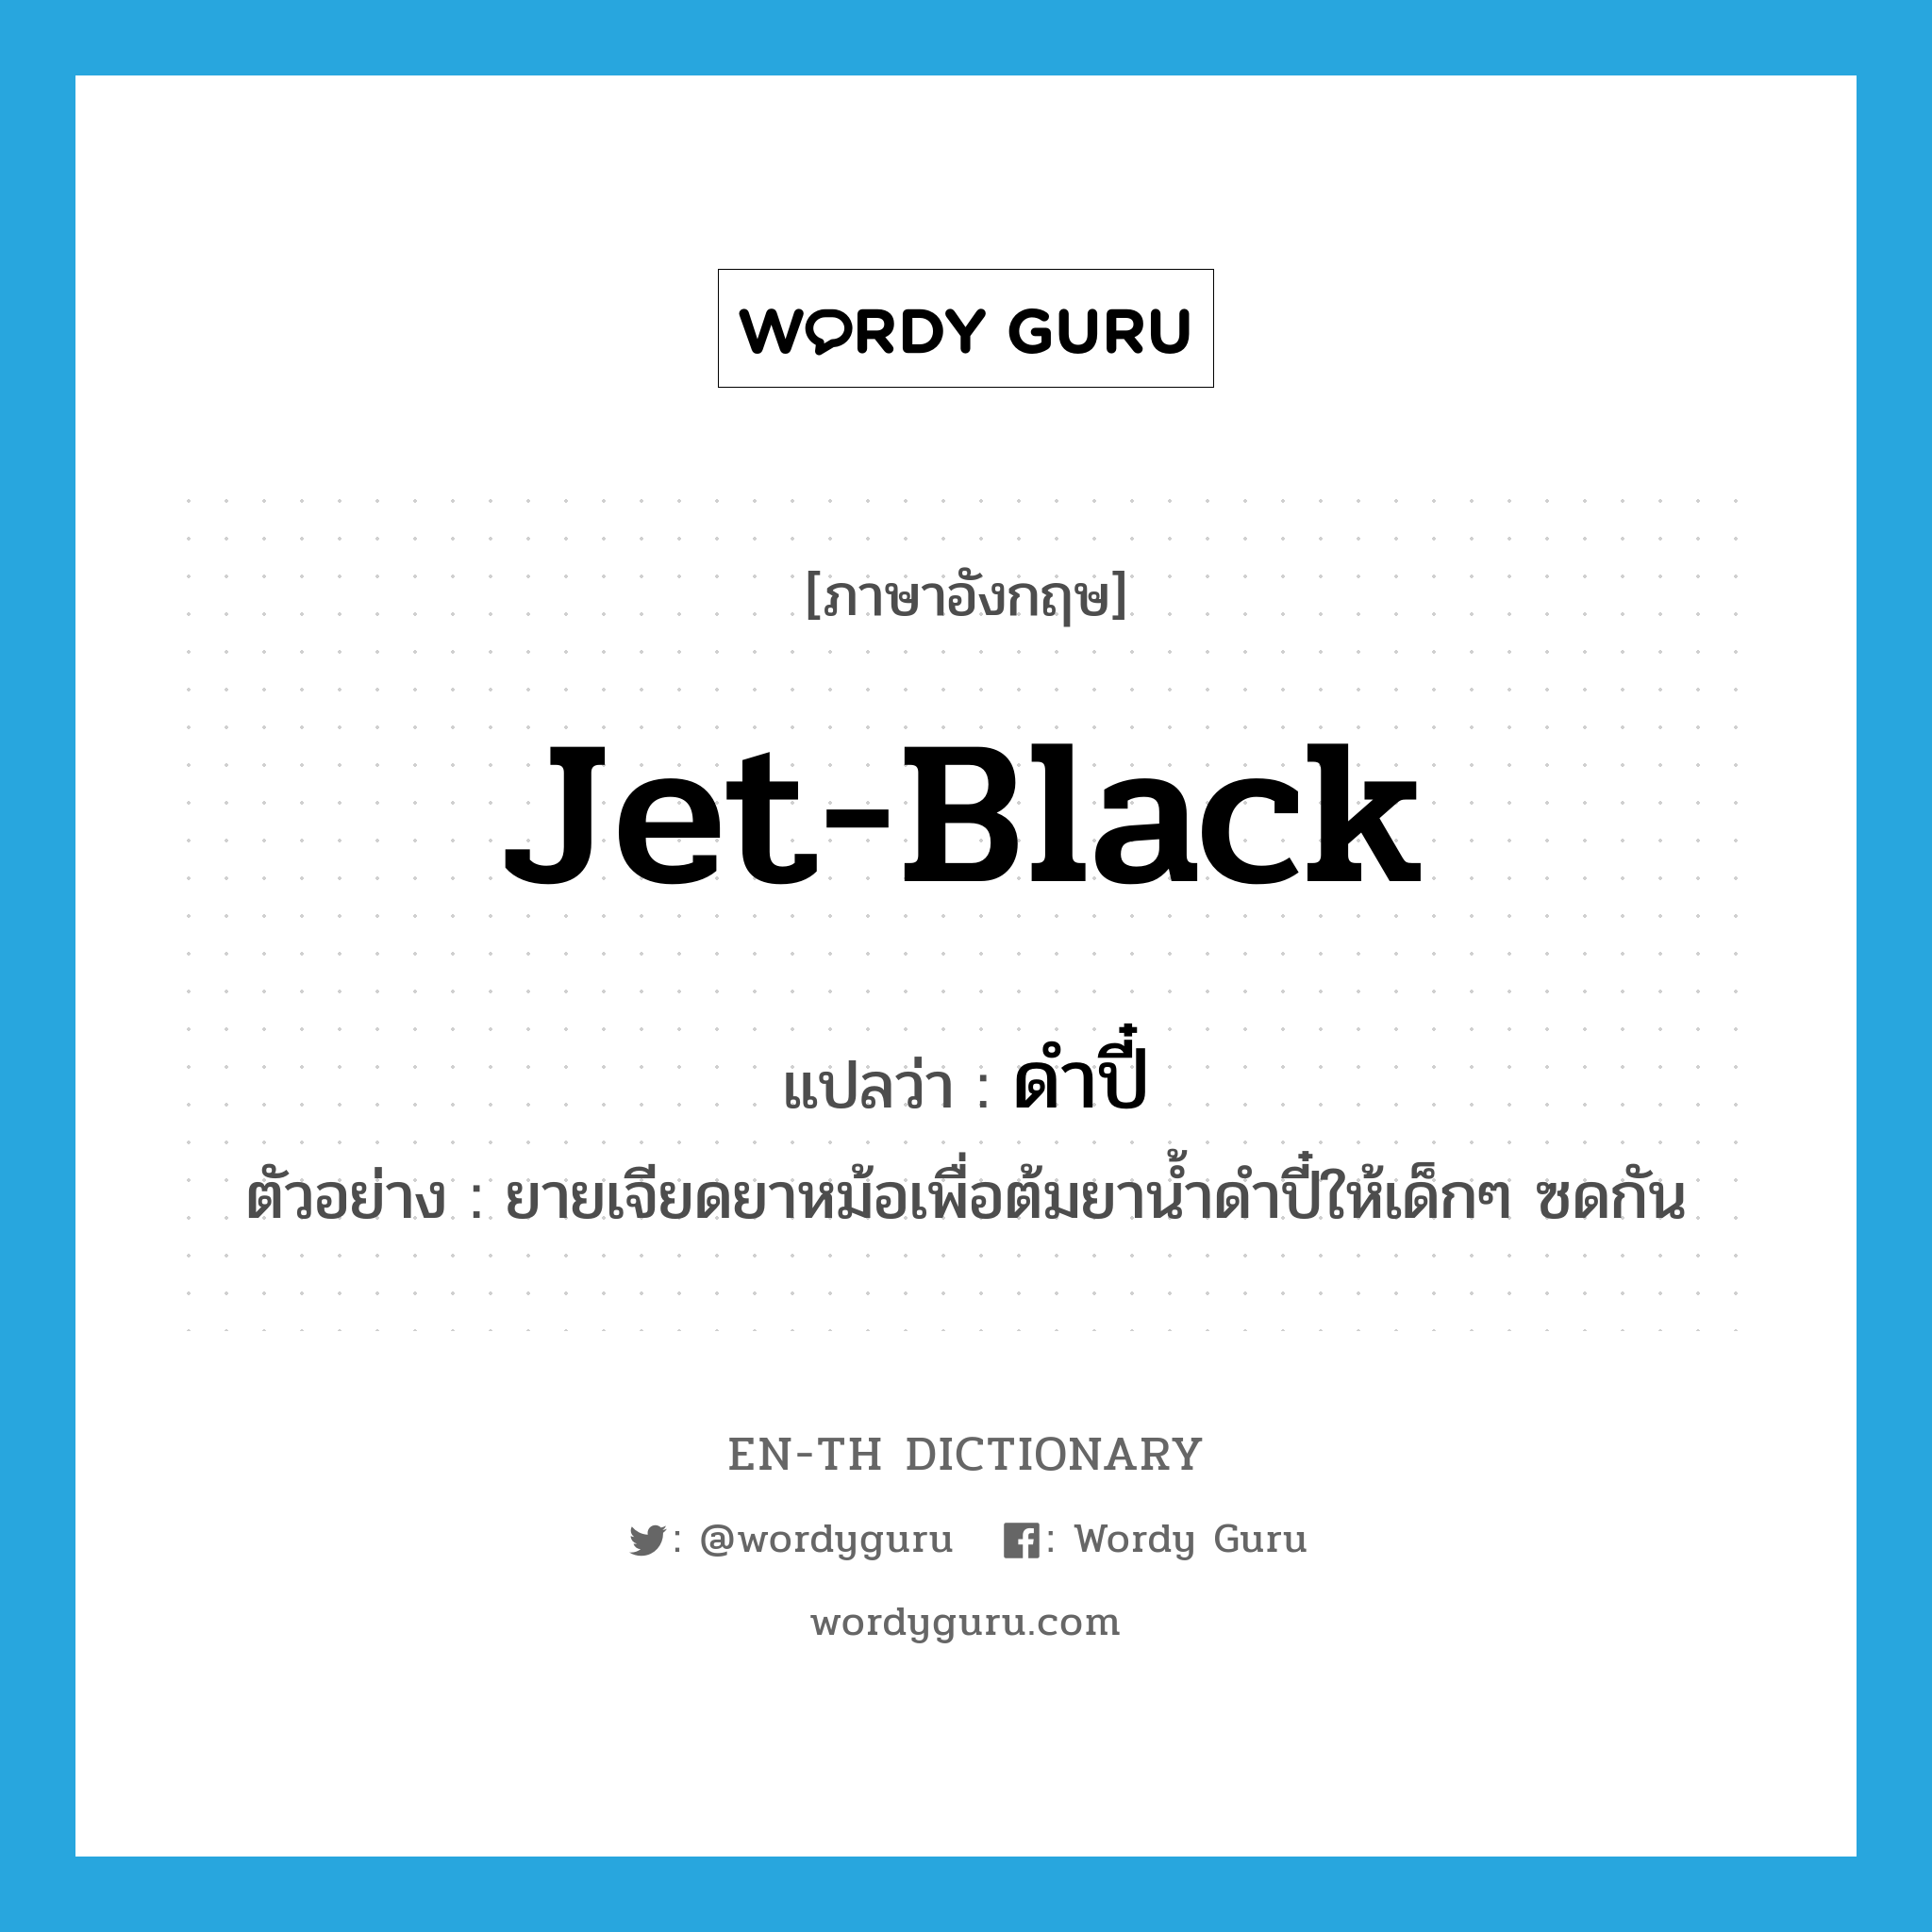 jet-black แปลว่า?, คำศัพท์ภาษาอังกฤษ jet-black แปลว่า ดำปี๋ ประเภท ADJ ตัวอย่าง ยายเจียดยาหม้อเพื่อต้มยาน้ำดำปี๋ให้เด็กๆ ซดกัน หมวด ADJ